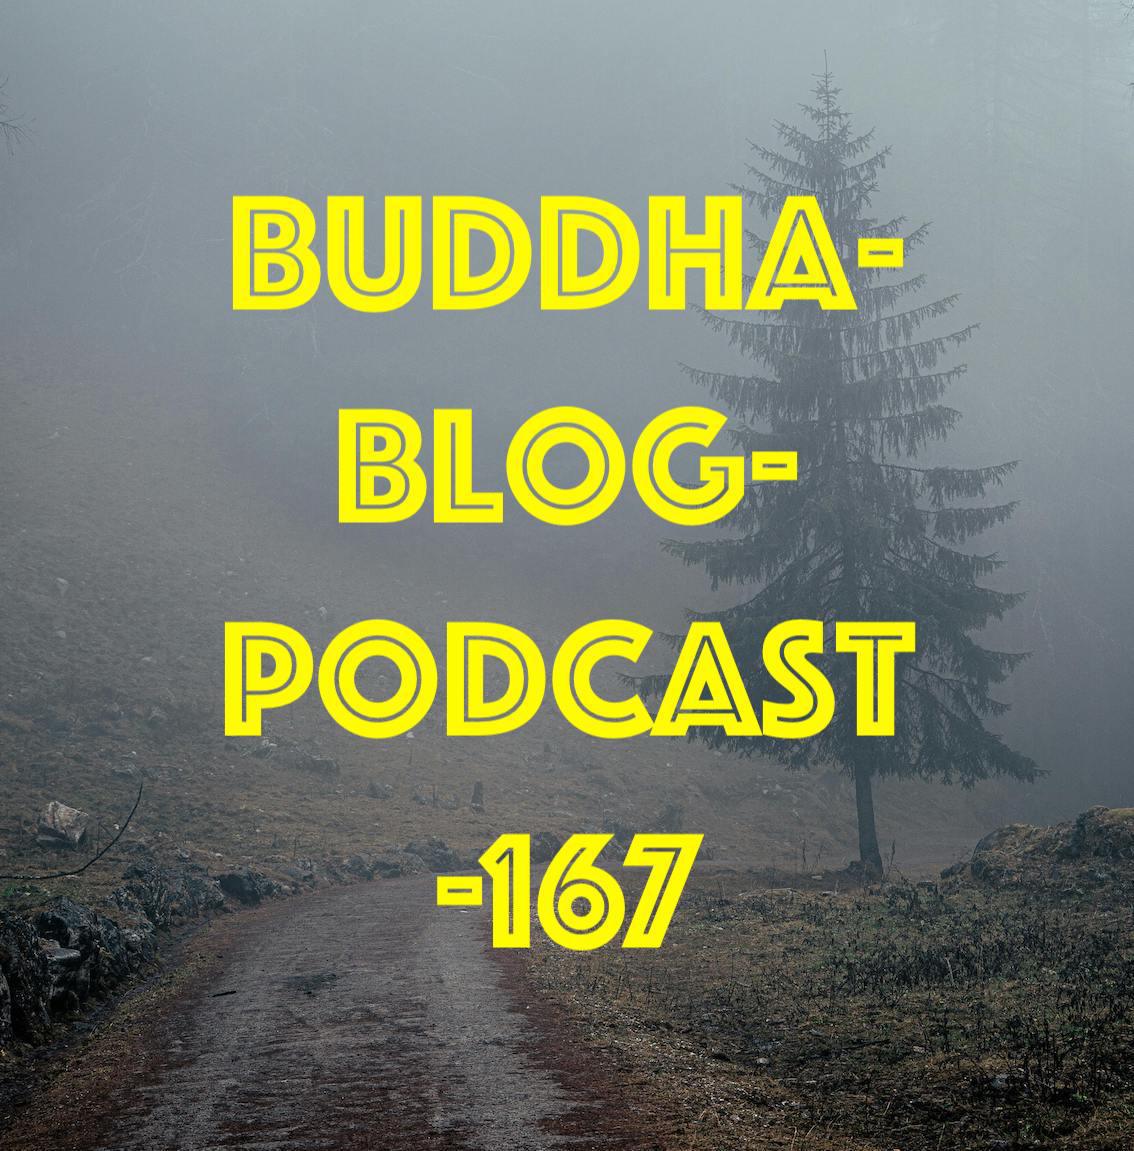 Buddha-Blog-Podcast Folge 167